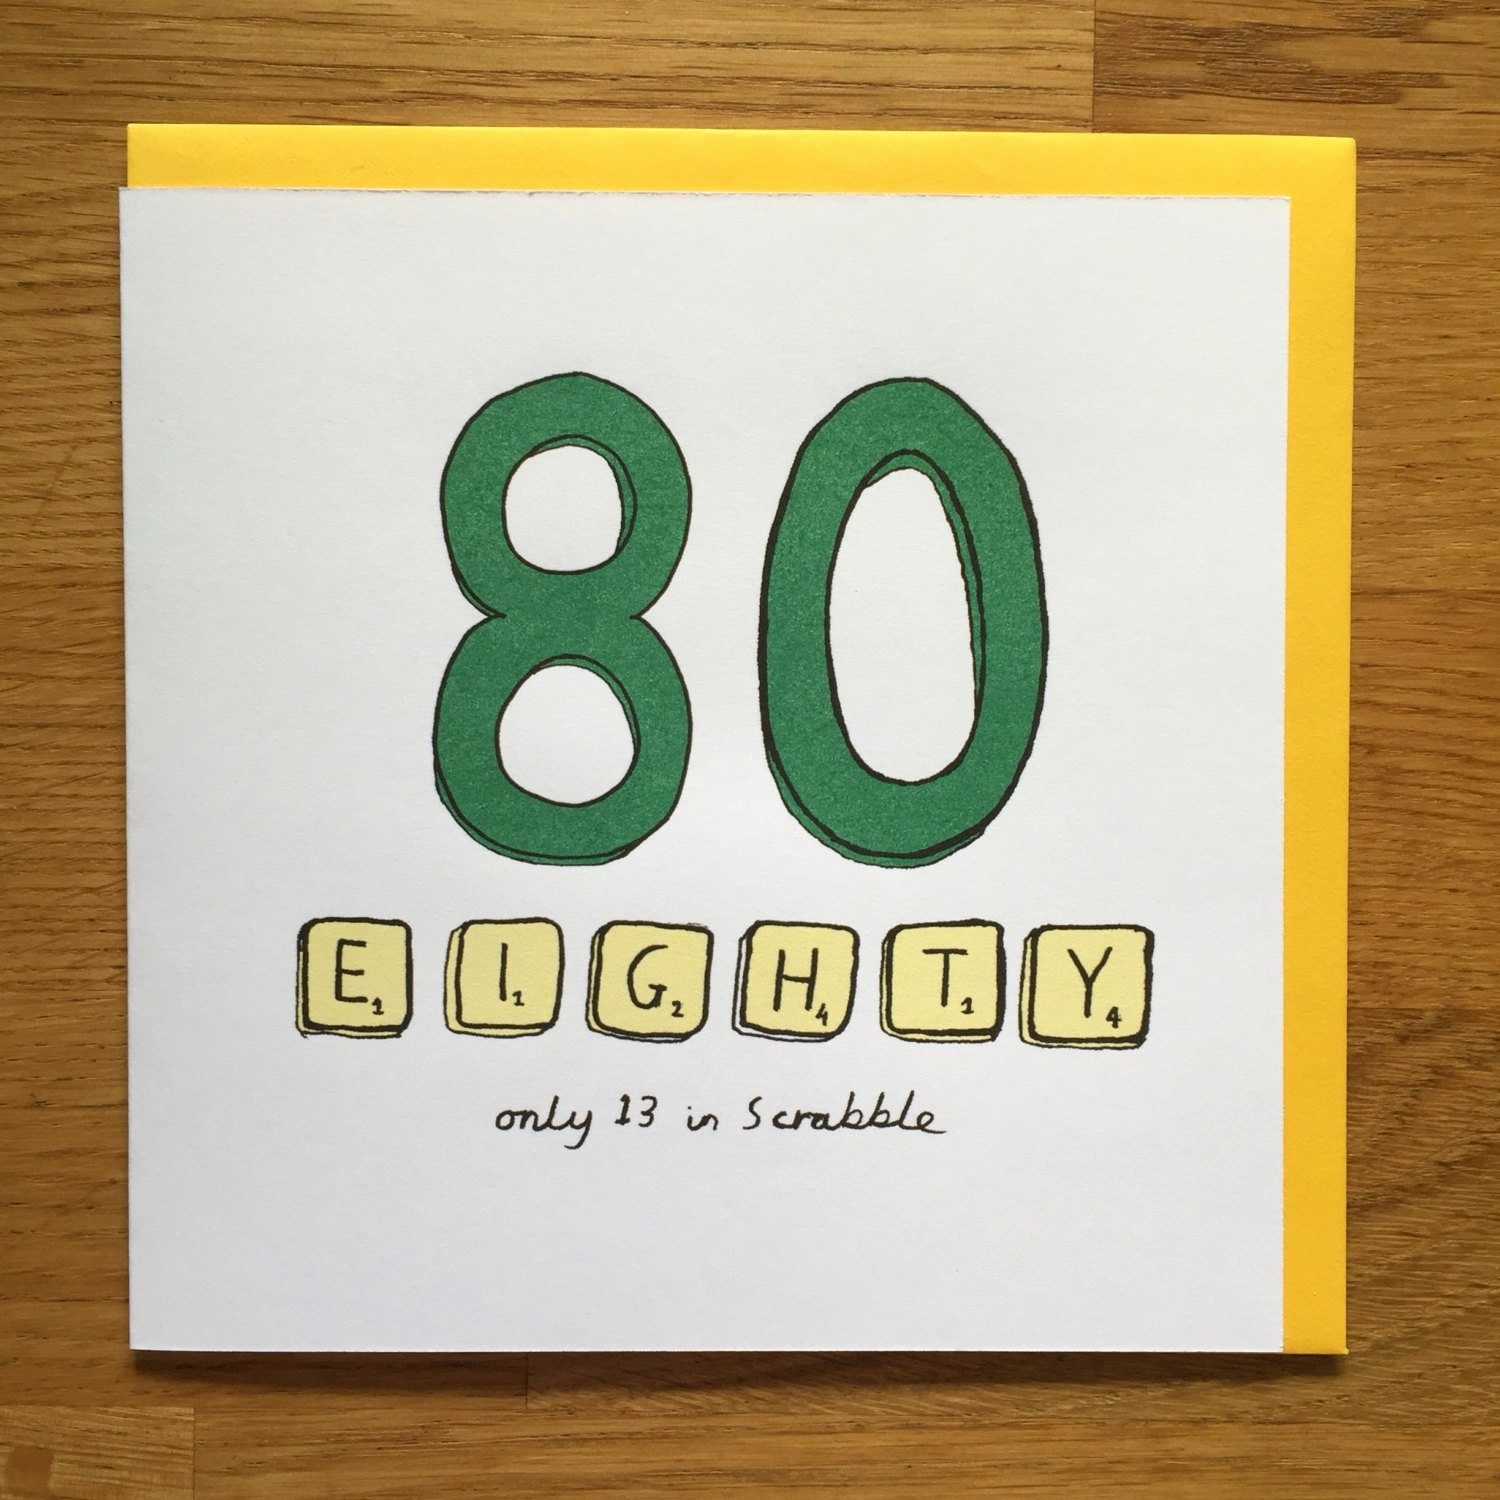 Unique Card Ideas For Birthdays 99 80 Birthday Card Ideas Grandma 80th Birthday Card Present